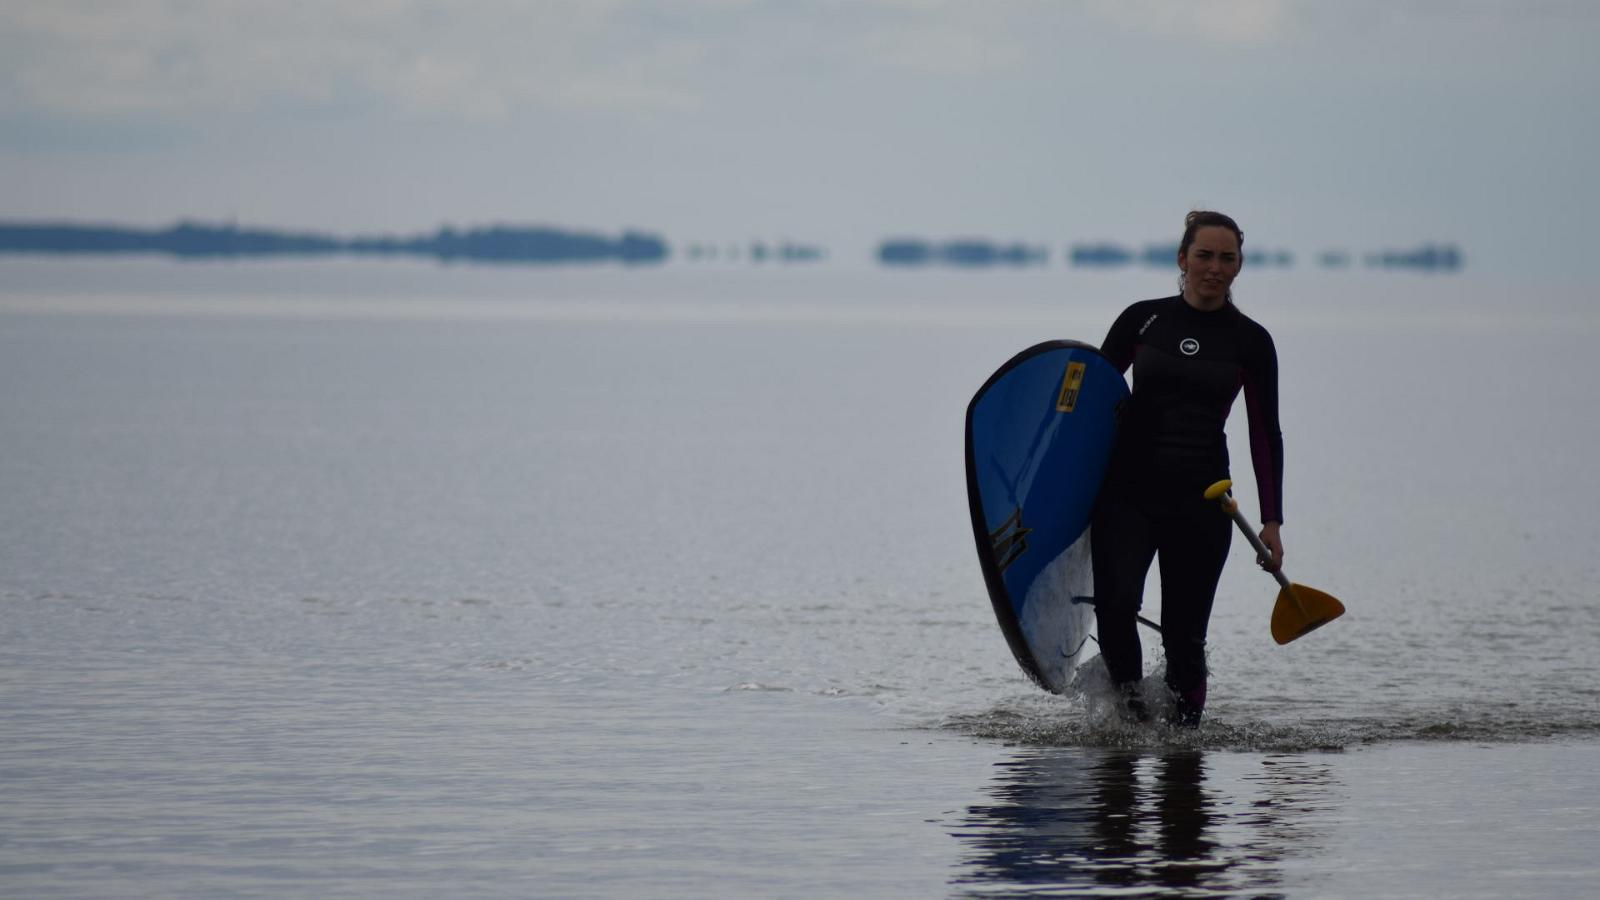 Аренда доски для SUP-серфинга в Пярну и различных местах Эстонии от Pärnu Surf Center